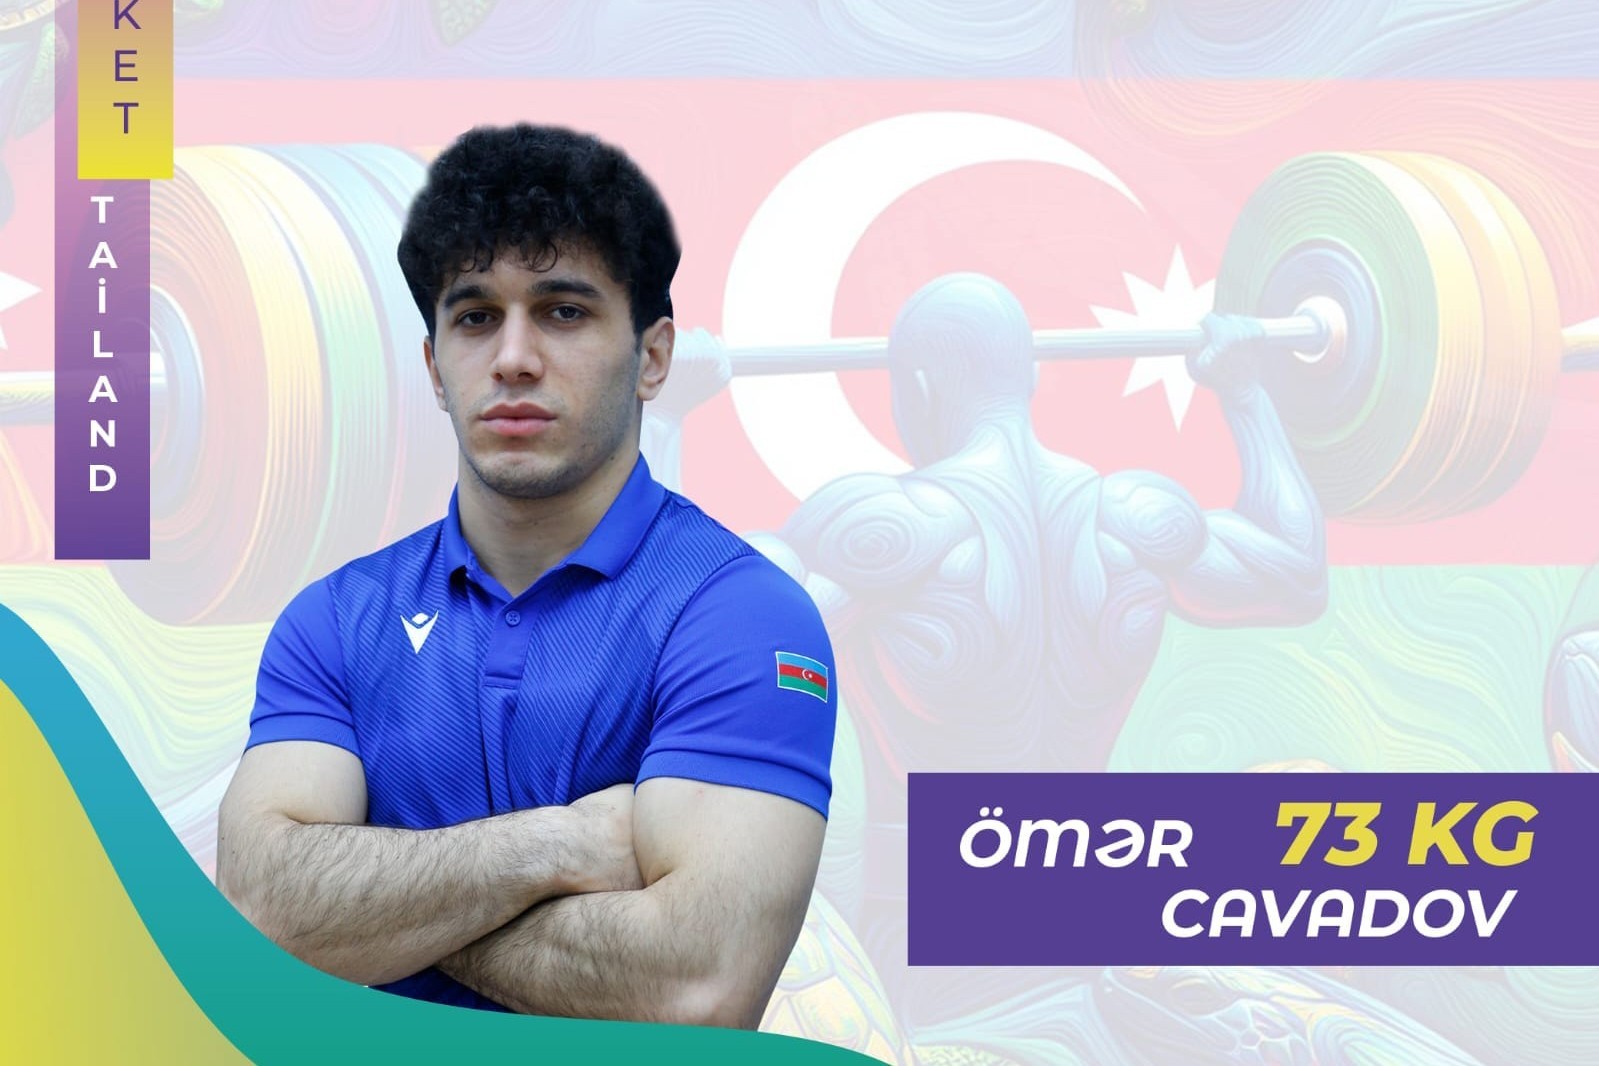 Омар Джавадов завершил выступление в лицензионном турнире